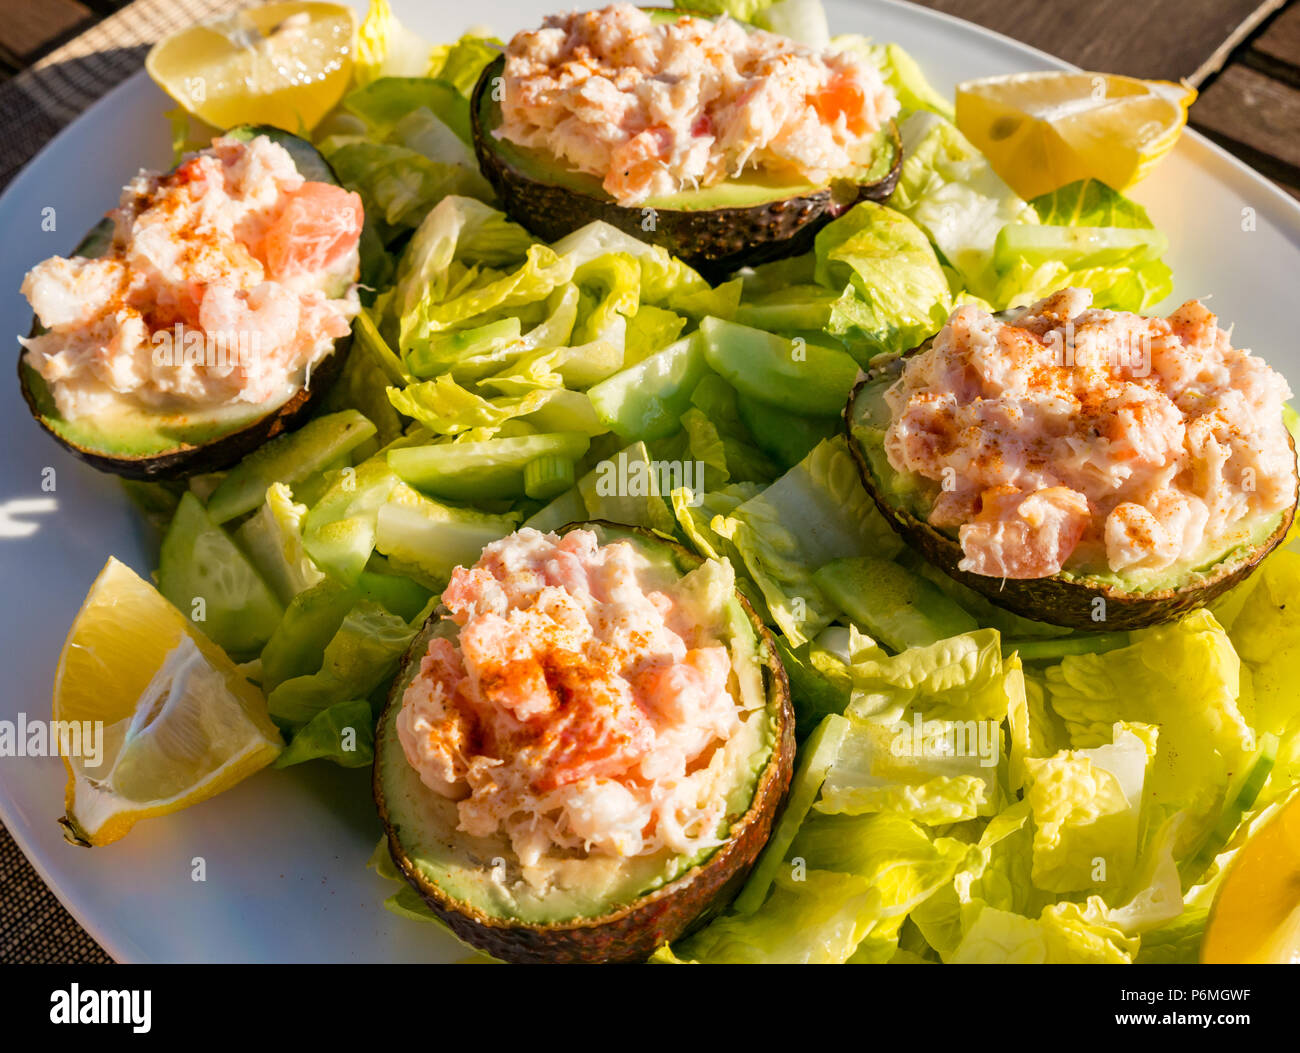 Gefüllt in Scheiben geschnittenen Avocados mit Garnelen und Krabbenfleisch auf einem Bett von Baby gem Salat mit Zitrone Keile auf Tisch im Freien in der Sonne Stockfoto